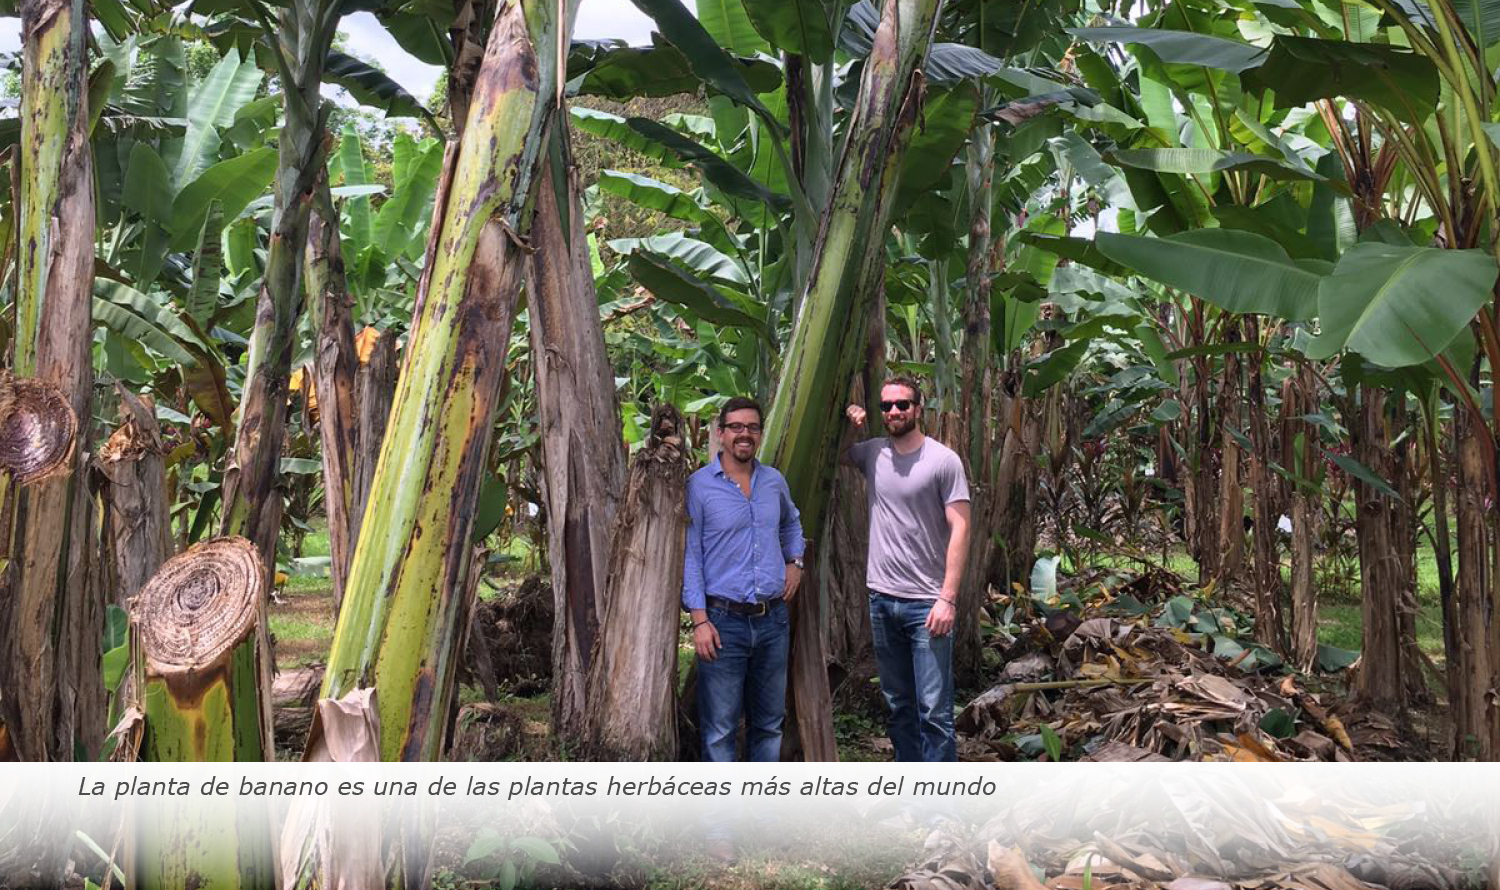 La planta de banano es una de las plantas herbáceas más altas del mundo